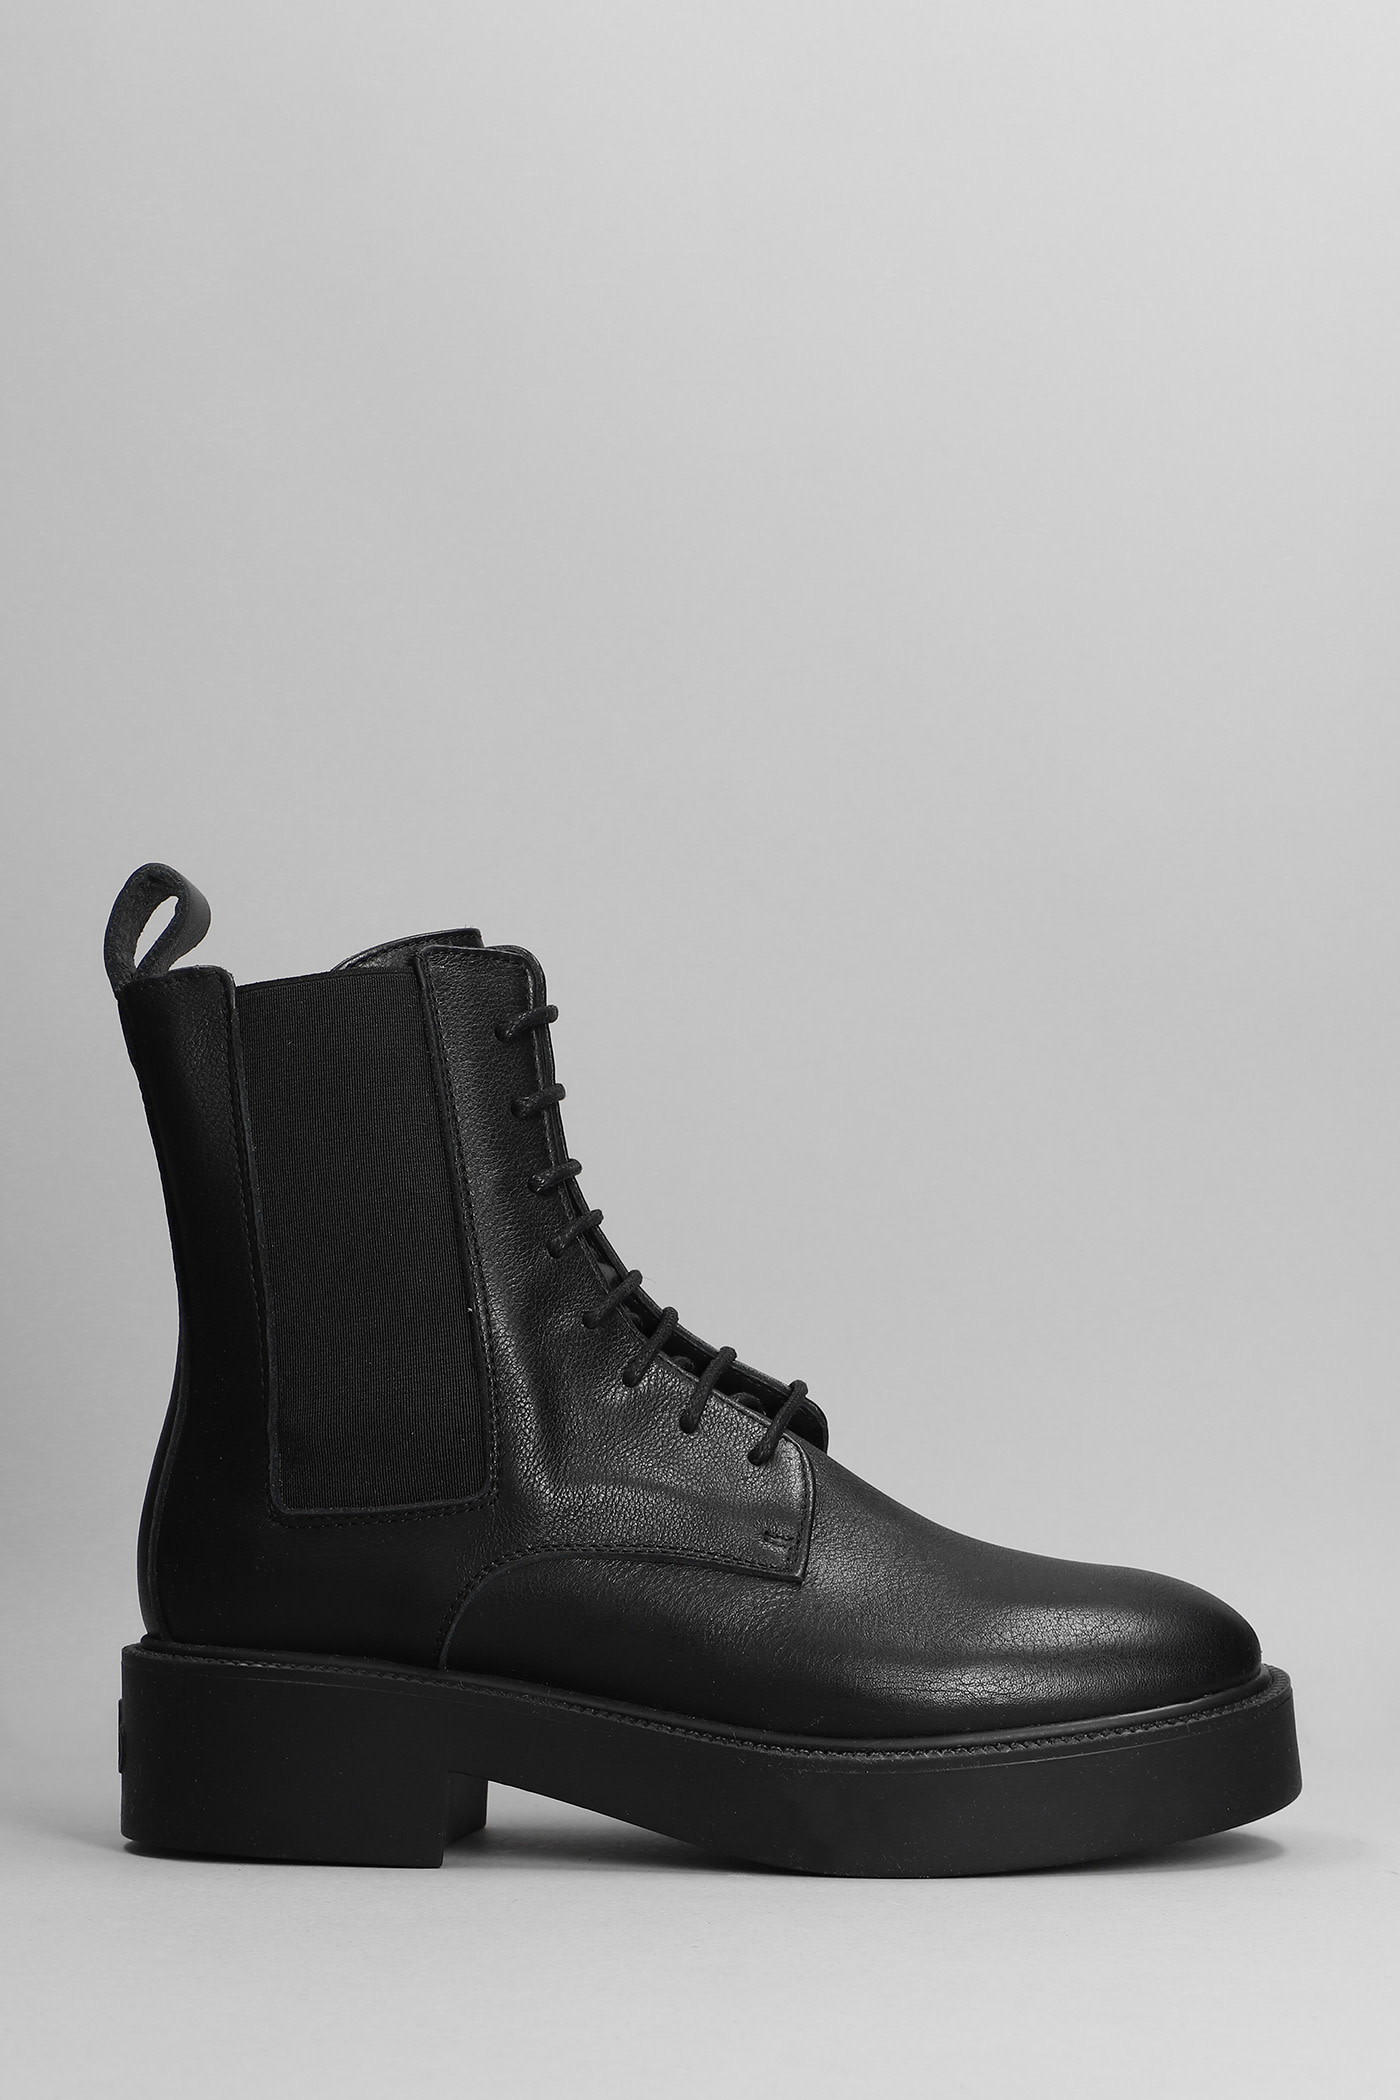 Copenhagen Combat Boots In Black Leather